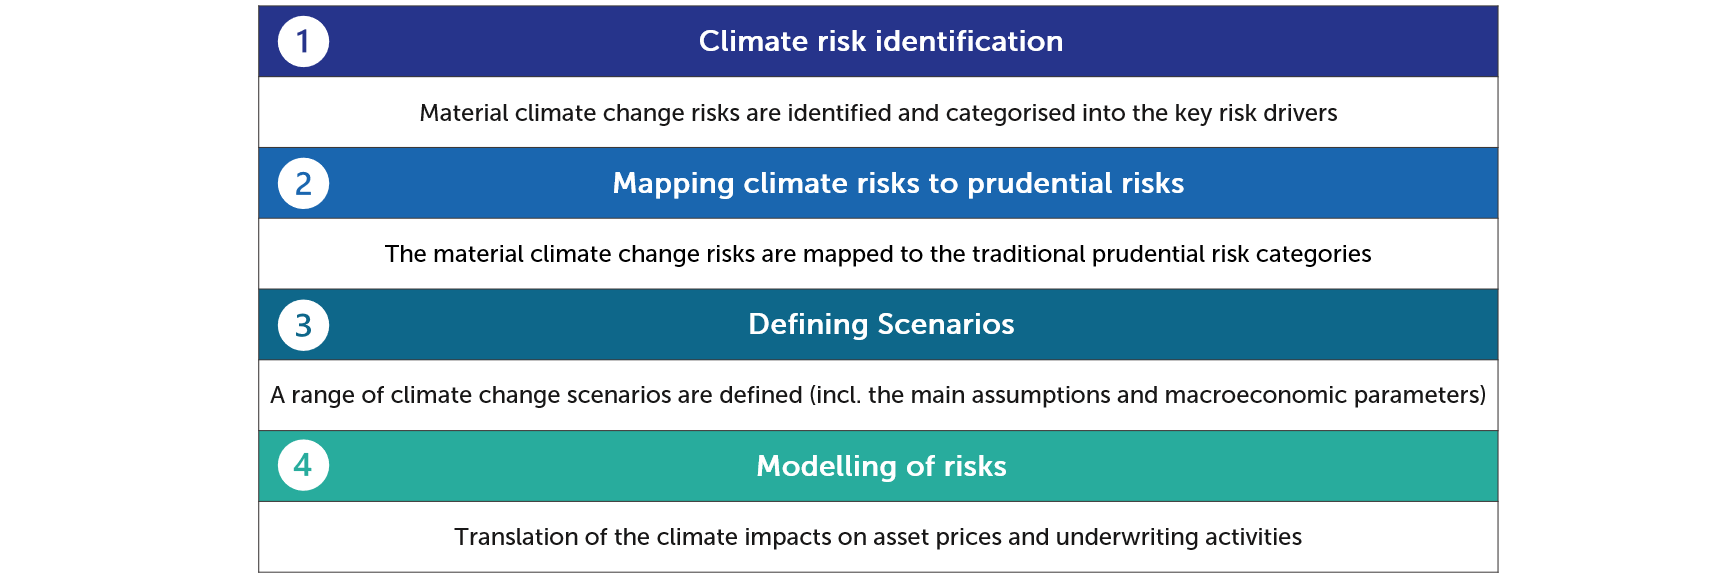 Risk management framework for climate change risk for insurers